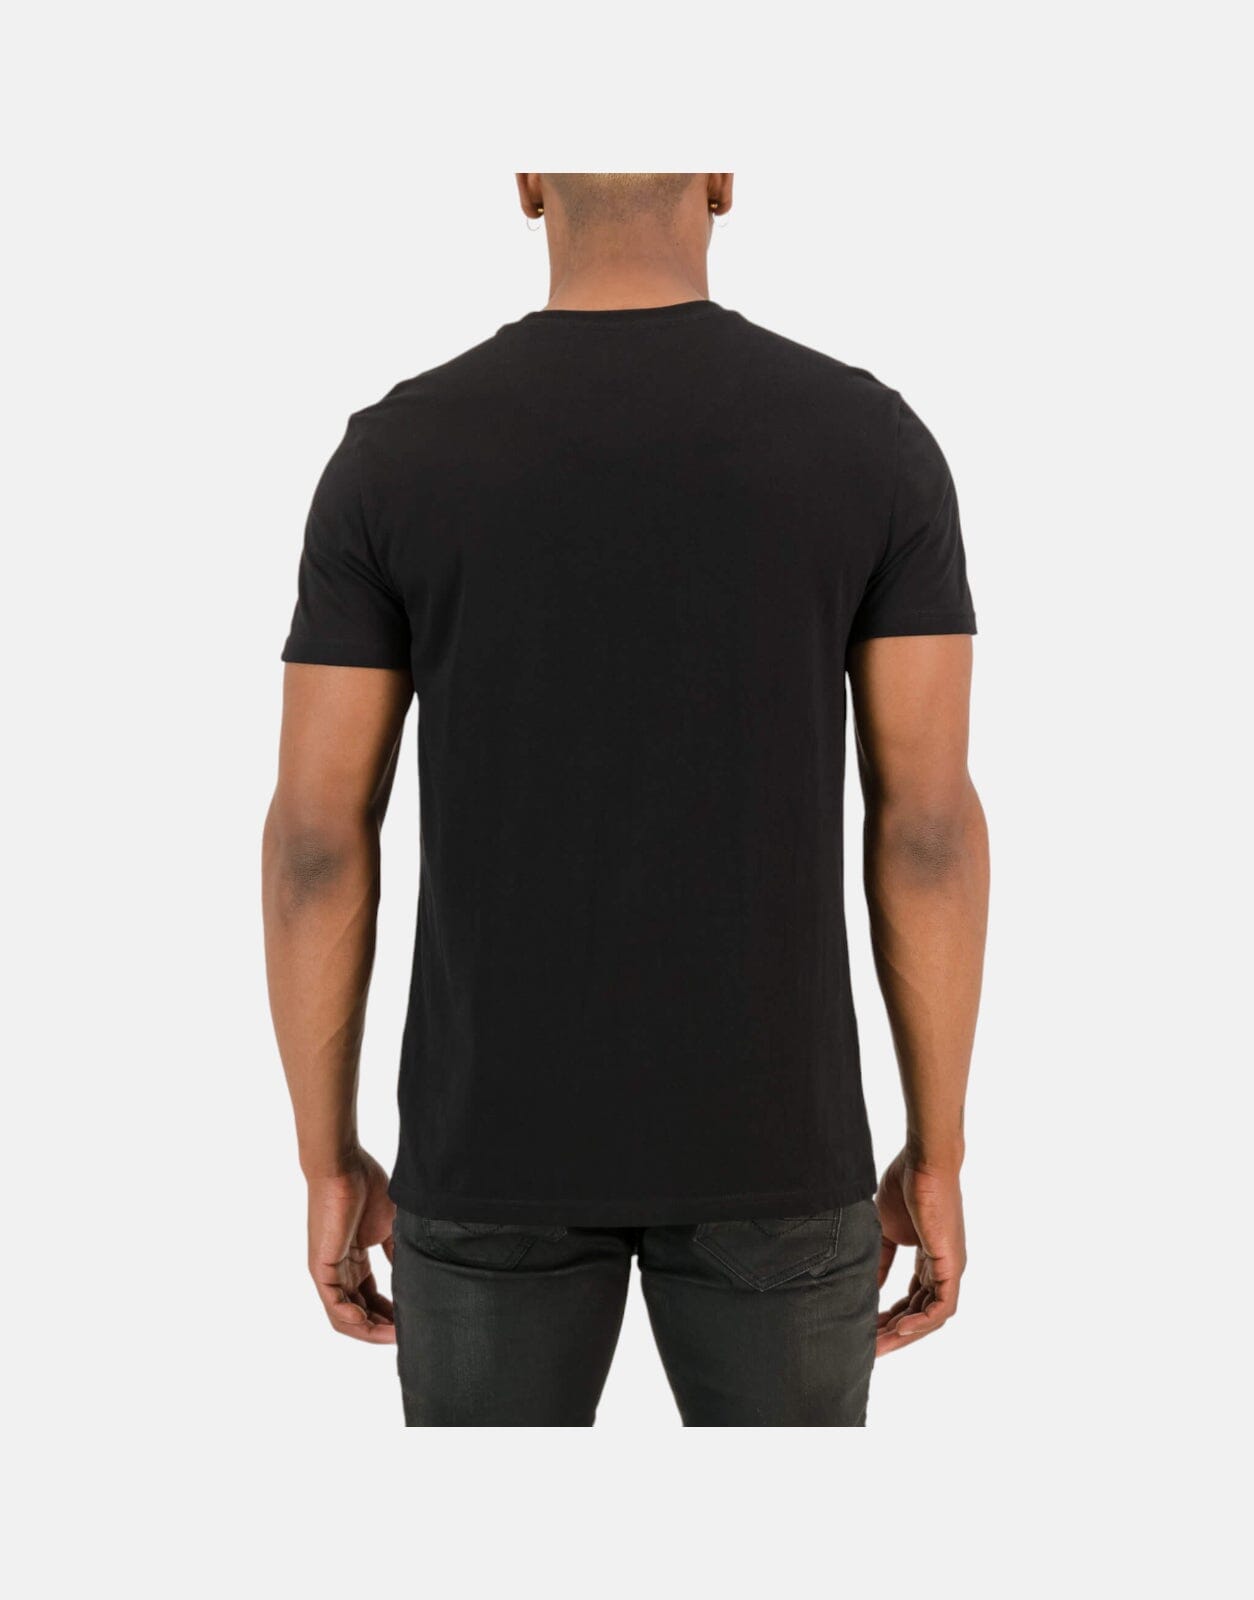 SPCC Vega Black T-Shirt - Subwear